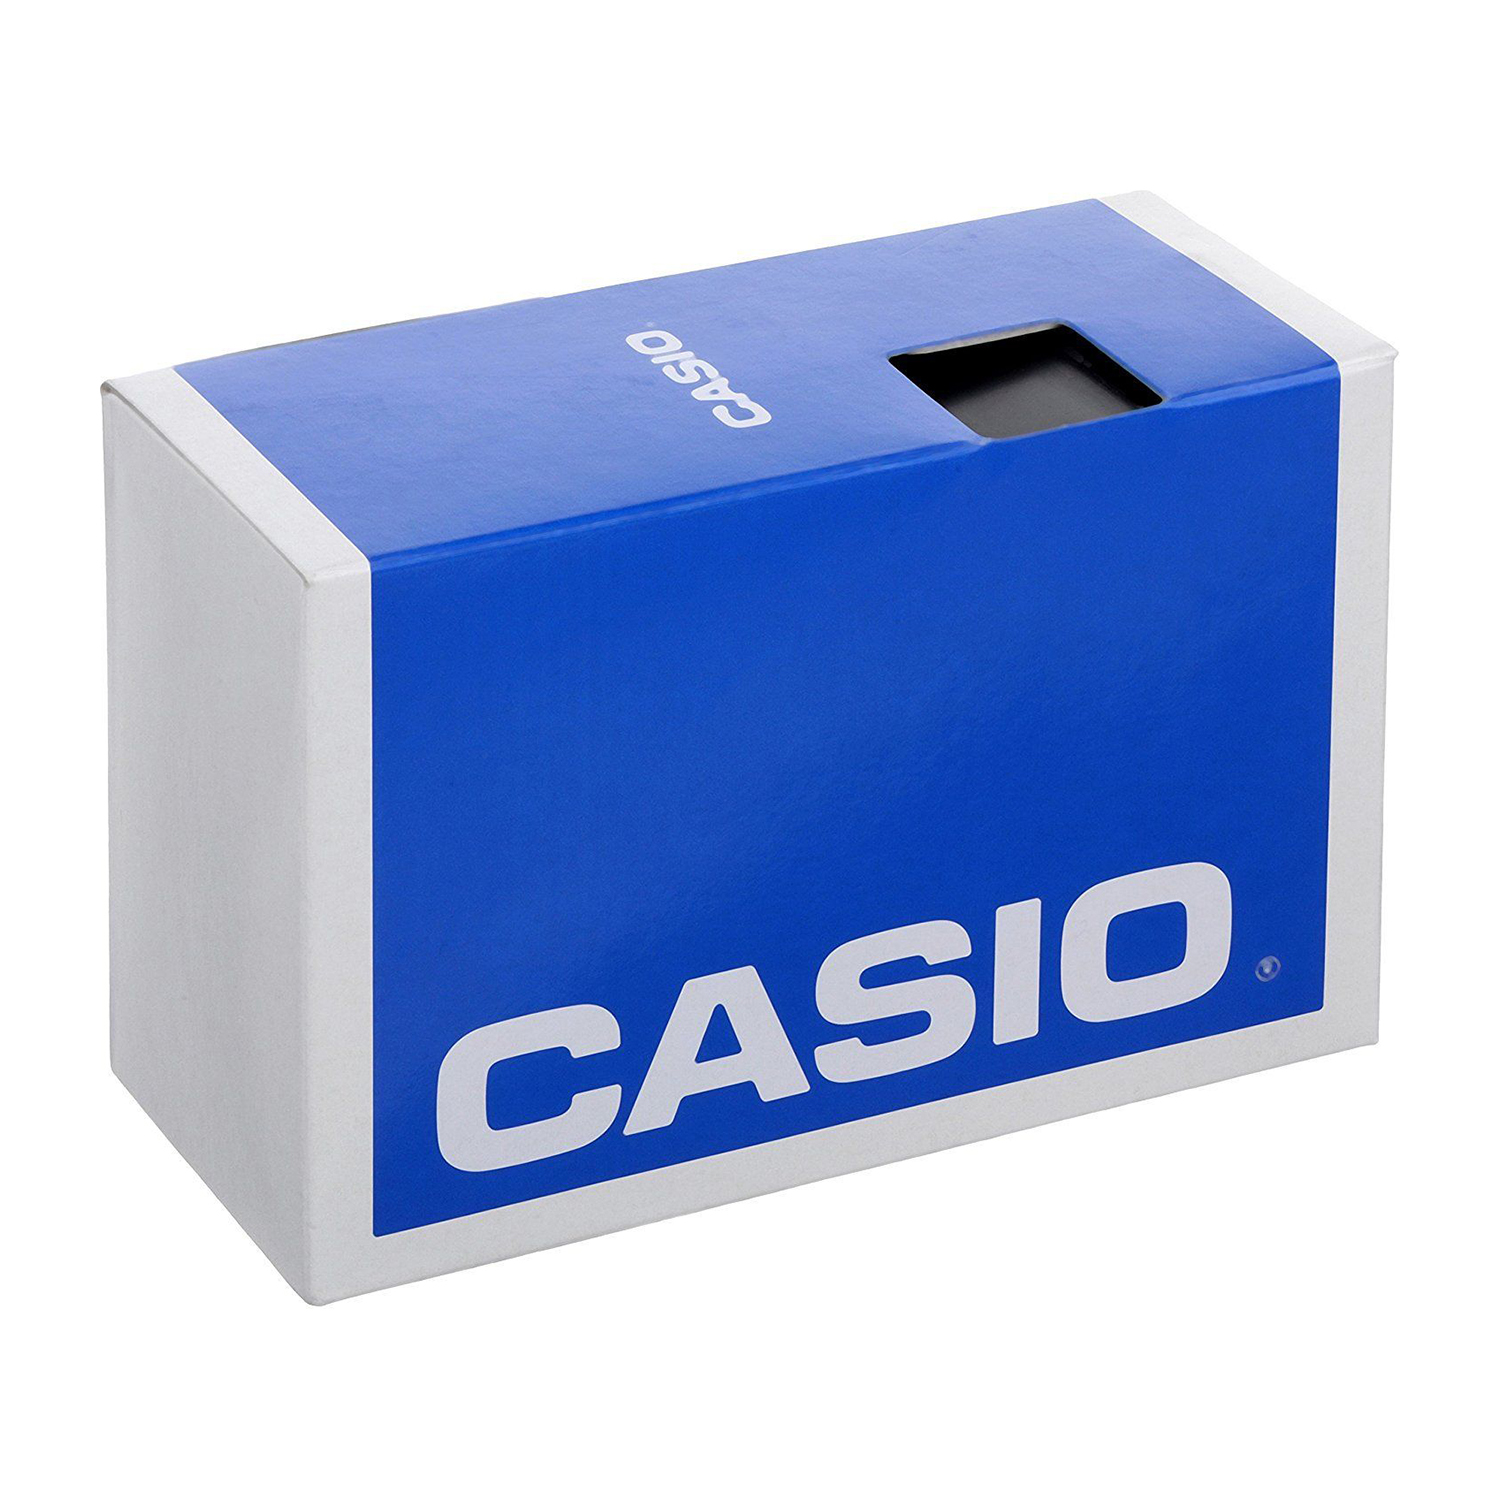 Casio Men's G-Shock Watch DW5600E-1V - Walmart.com